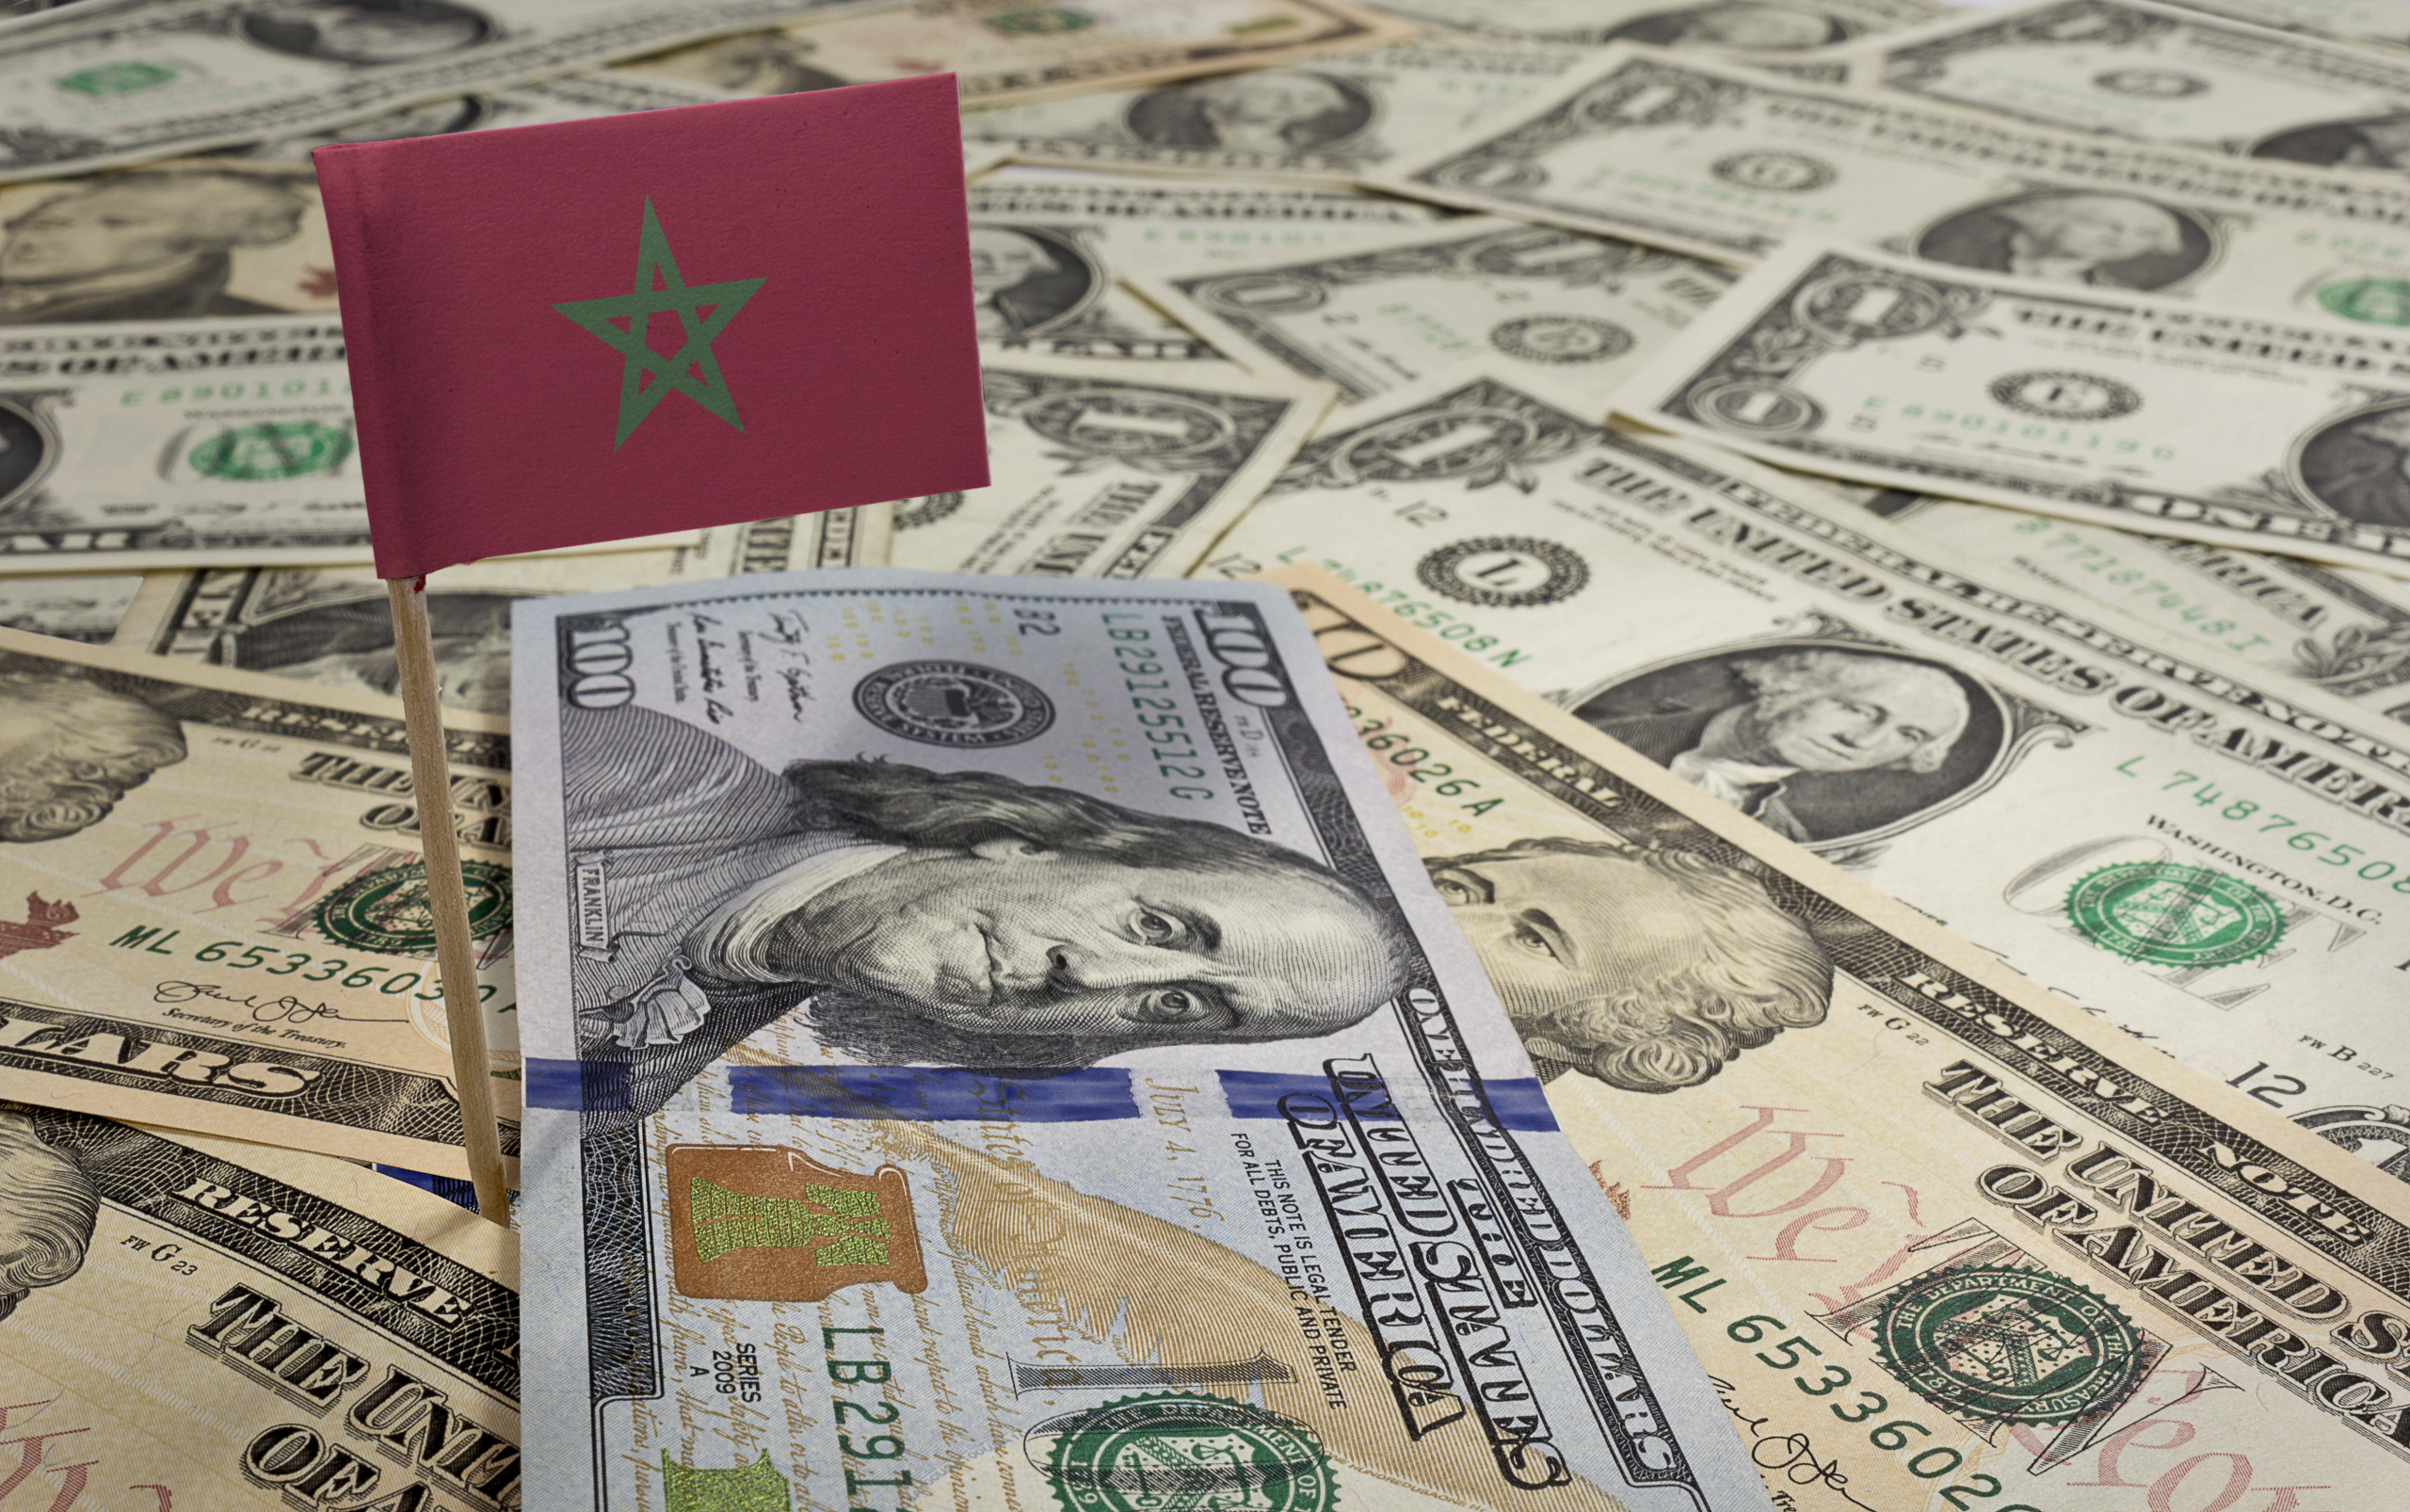 صندوق النقد: حان الوقت لعودة المغرب لـ”تعويم الدرهم” ومستعدون للدعم